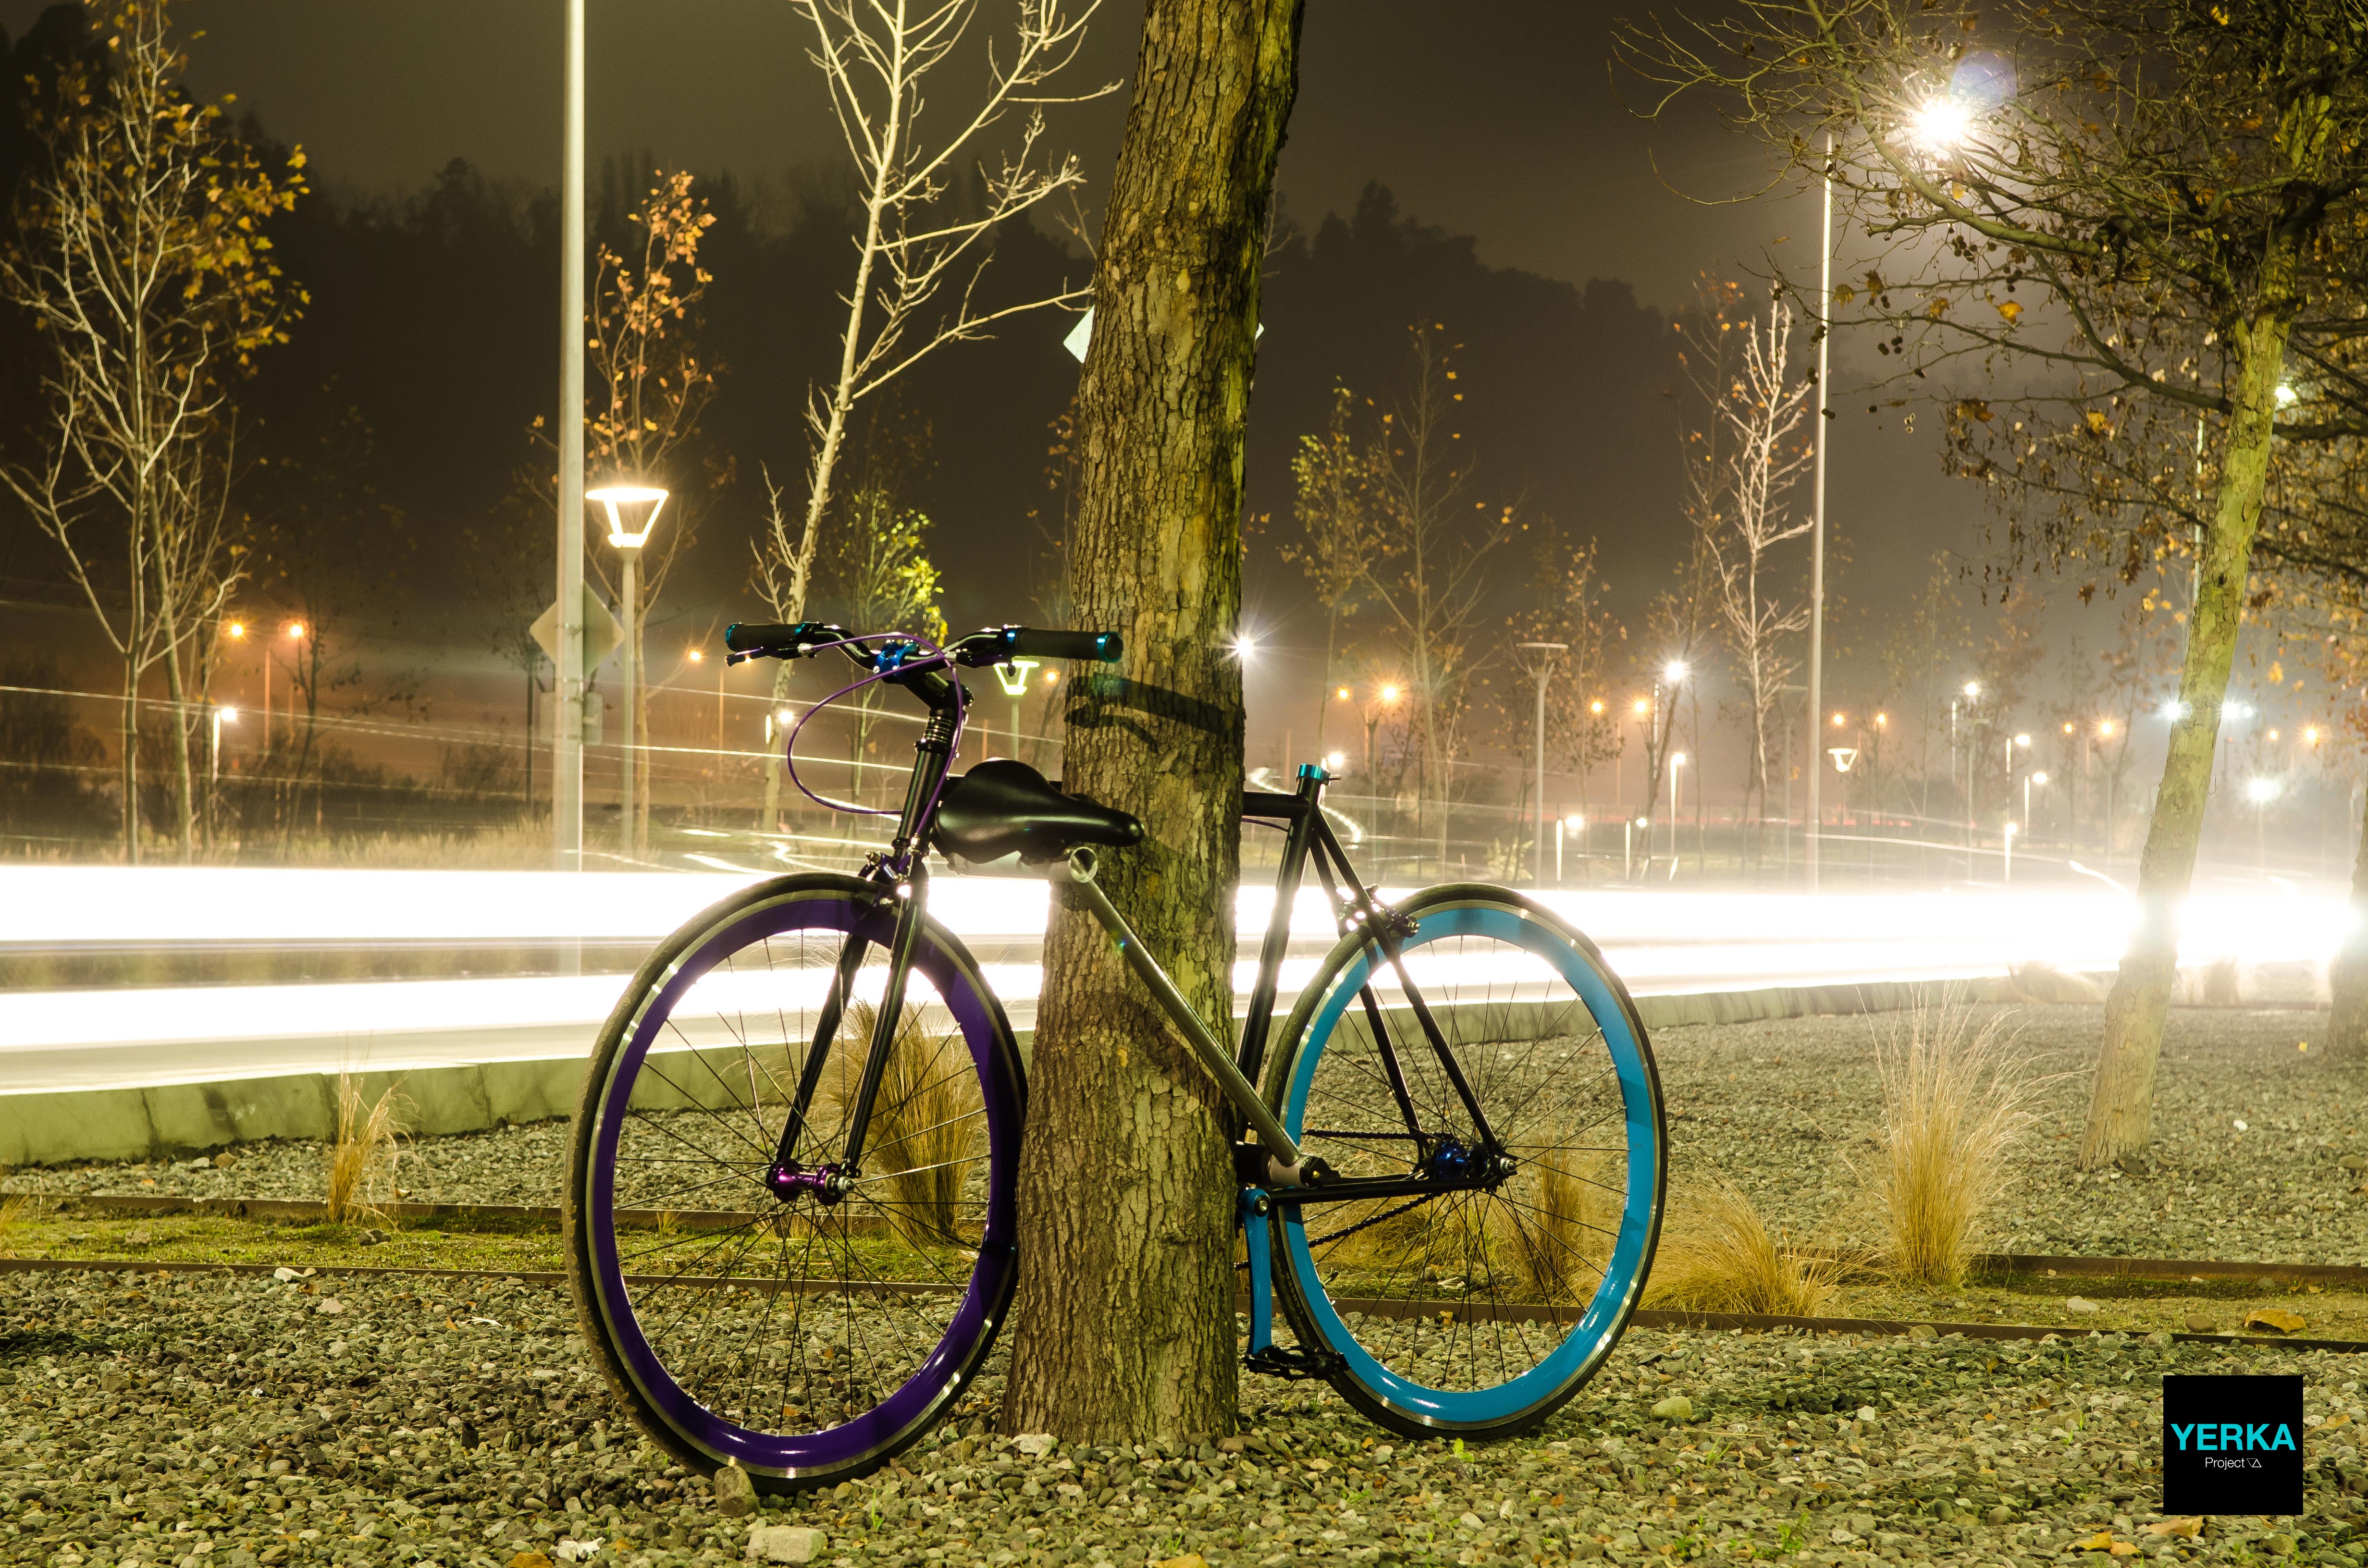 Велосипед в хорошем состояние. Велосипед для бас. Фото велосипедов у которых светятся колёса. Yerka велосипед купить в Ташкенте.